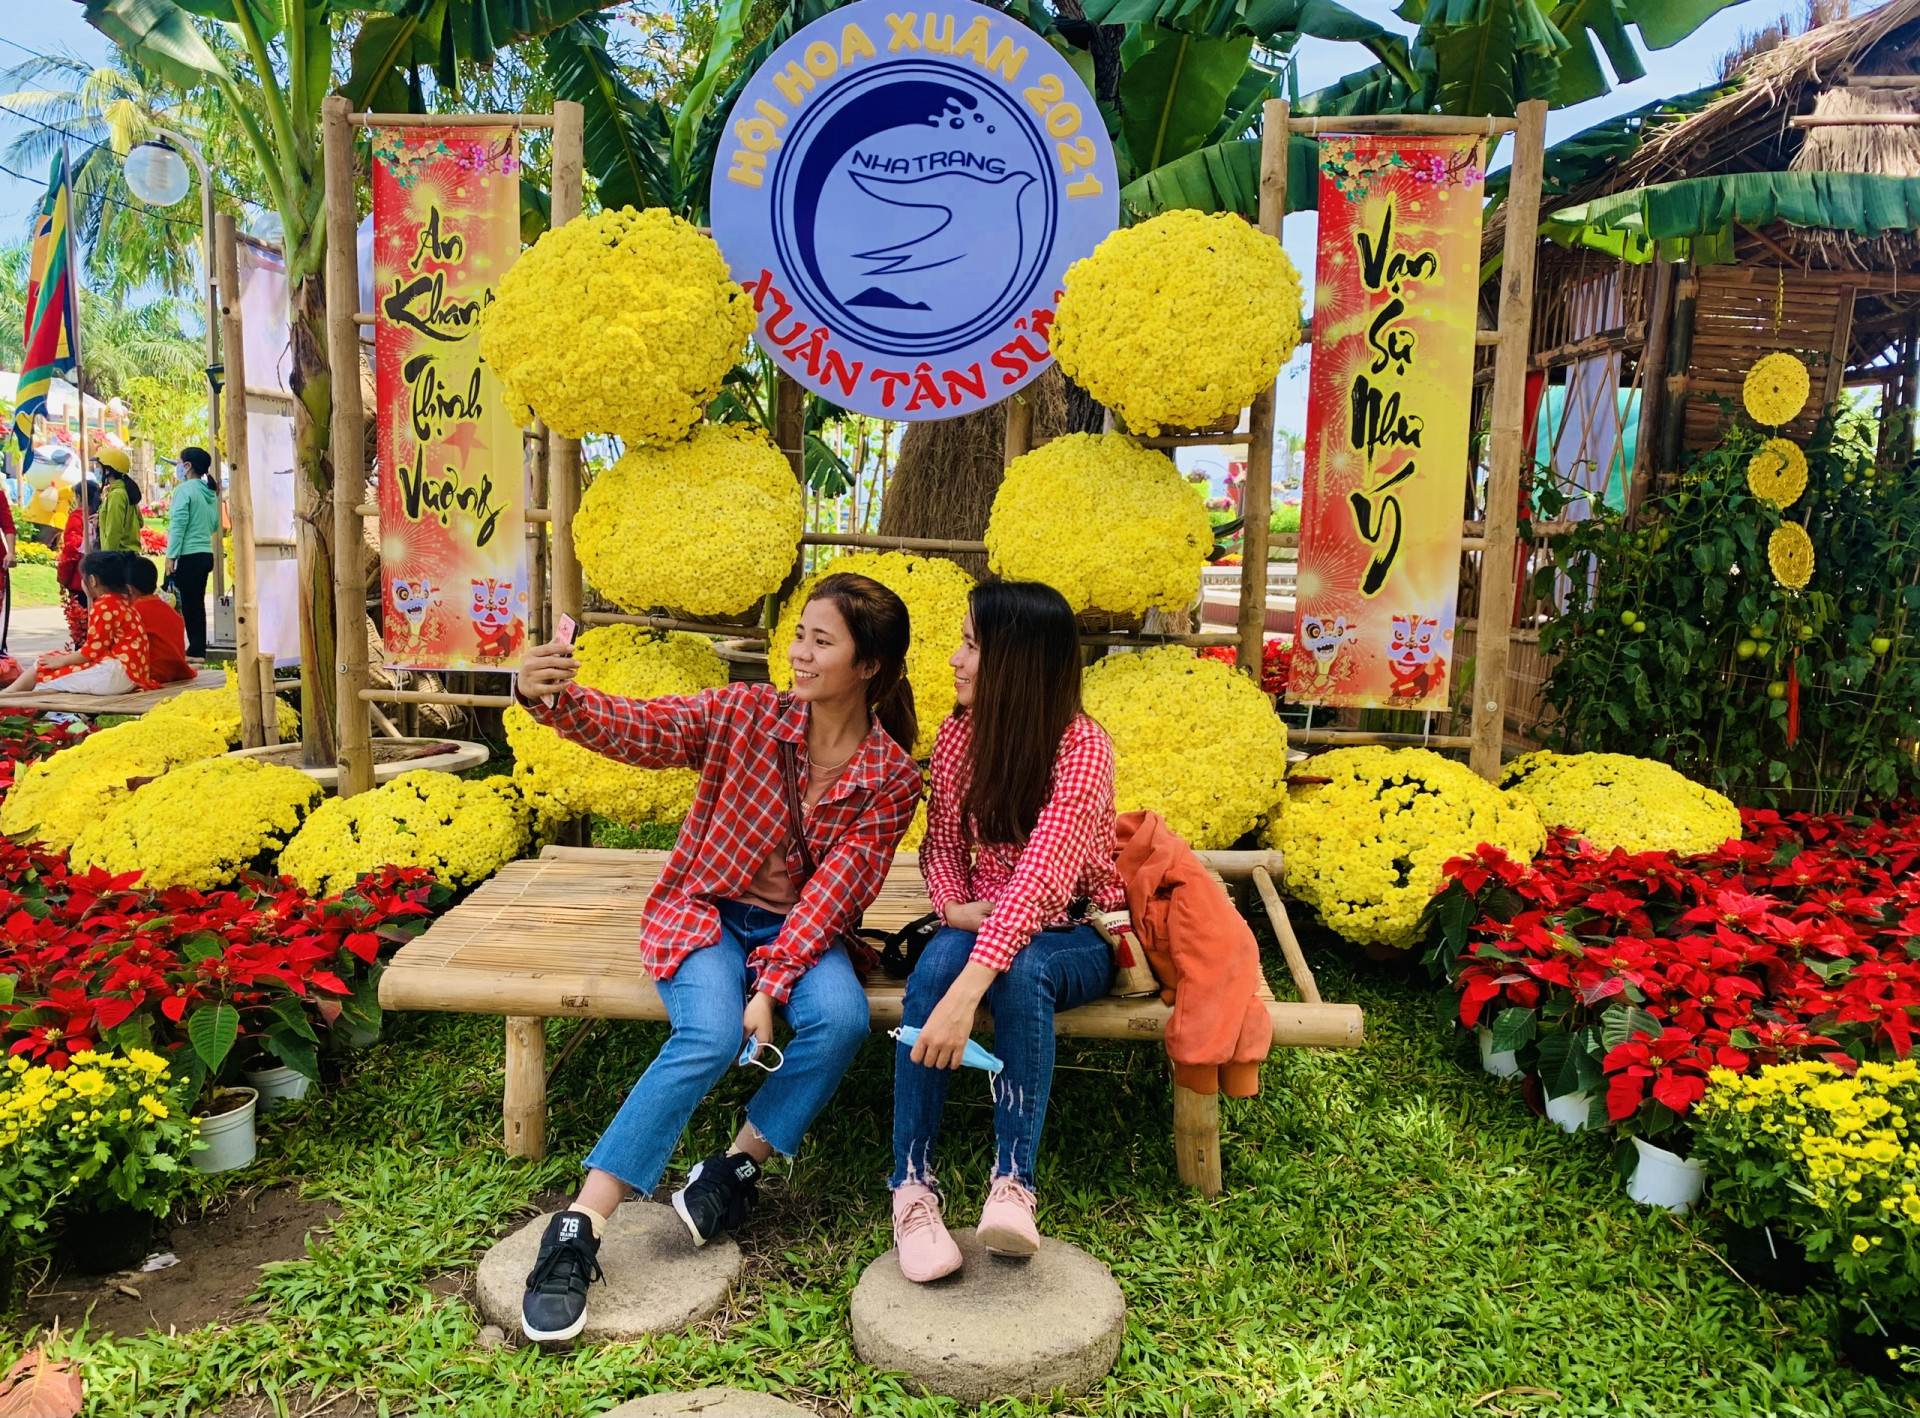 Hội hoa Xuân Nha Trang – Khánh Hòa là điểm tham quan, chụp ảnh lưu niệm của người dân và du khách trong những ngày đón Tết Nguyên đán.